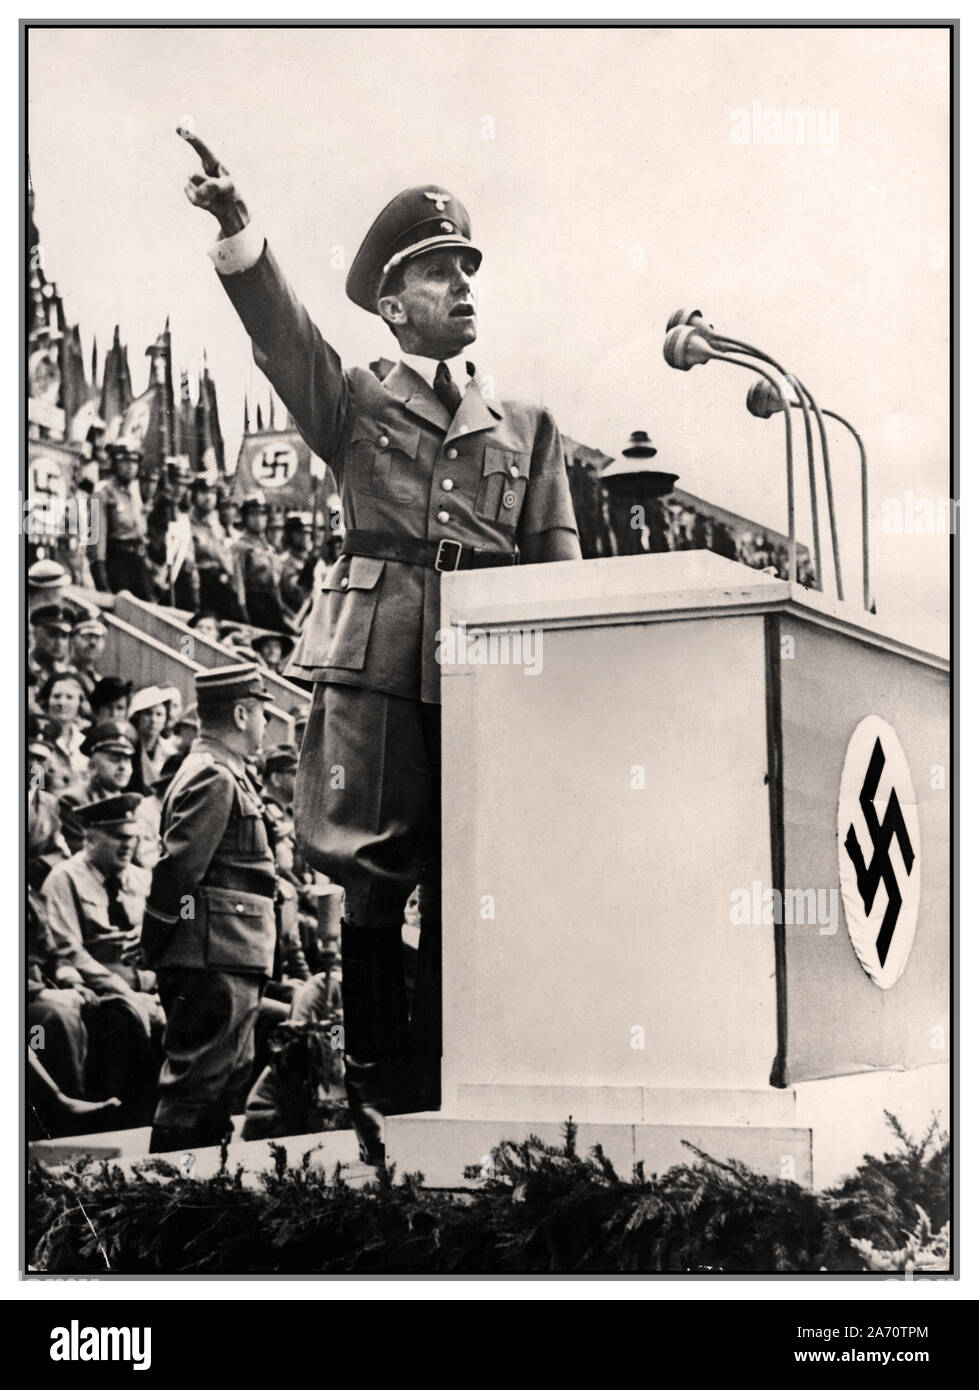 Vintage WW2 1930 image de Dr Joseph Goebbels Ministre de la propagande nazi allemand fait un discours sur un podium avec la croix gammée nazie sur l'Allemagne avant affiche l'emblème Banque D'Images